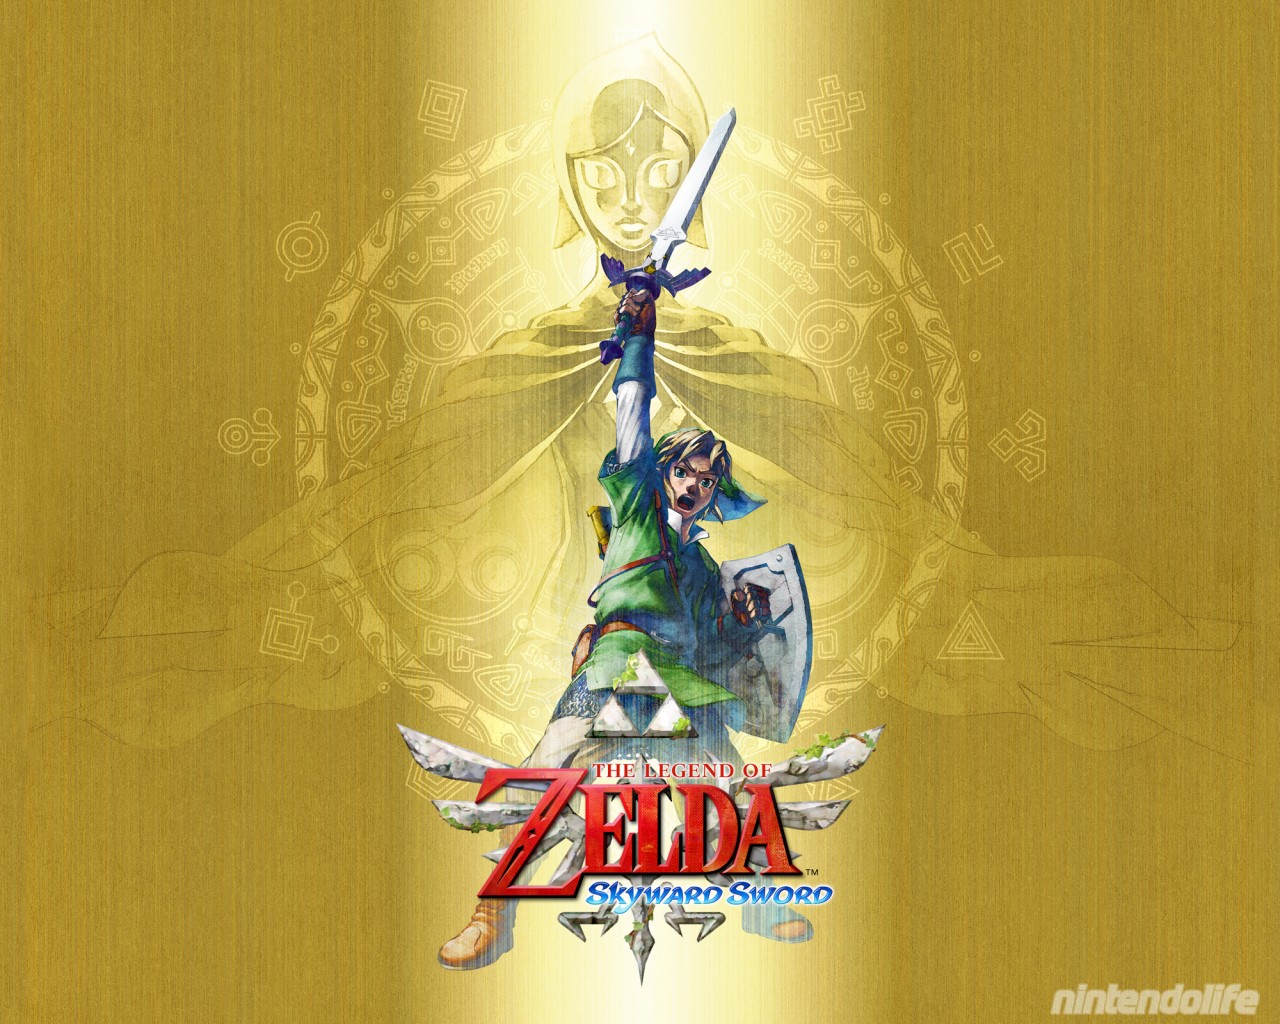 The Legend Of Zelda Skyward Sword And Wallpaper Nintendo Life